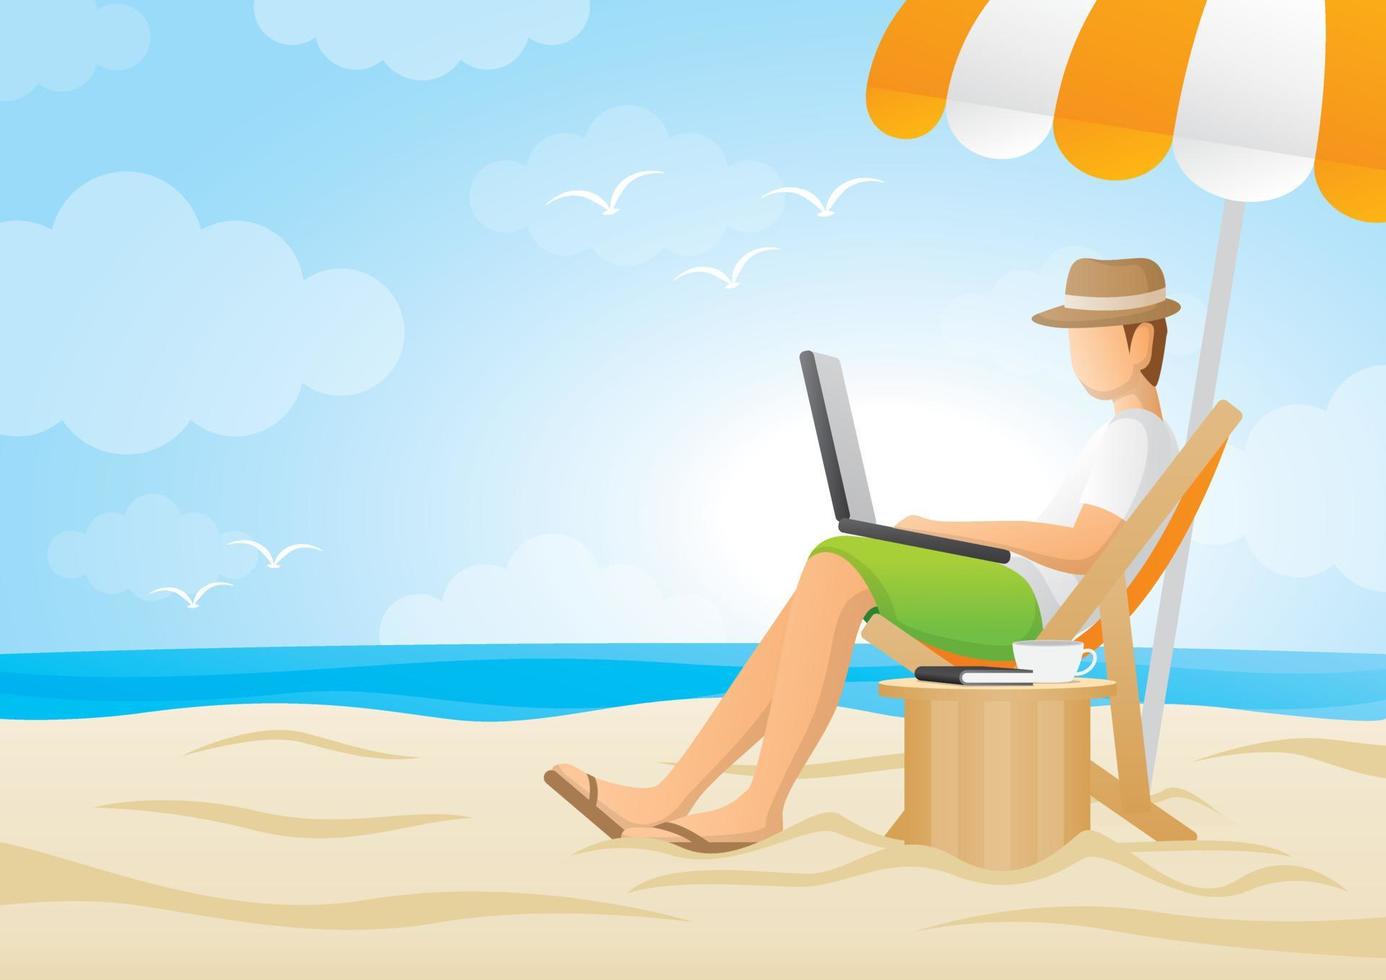 un uomo sta lavorando su un computer portatile in spiaggia con cielo blu e ombrellone arancione. vettore di illustrazione del lavoro.